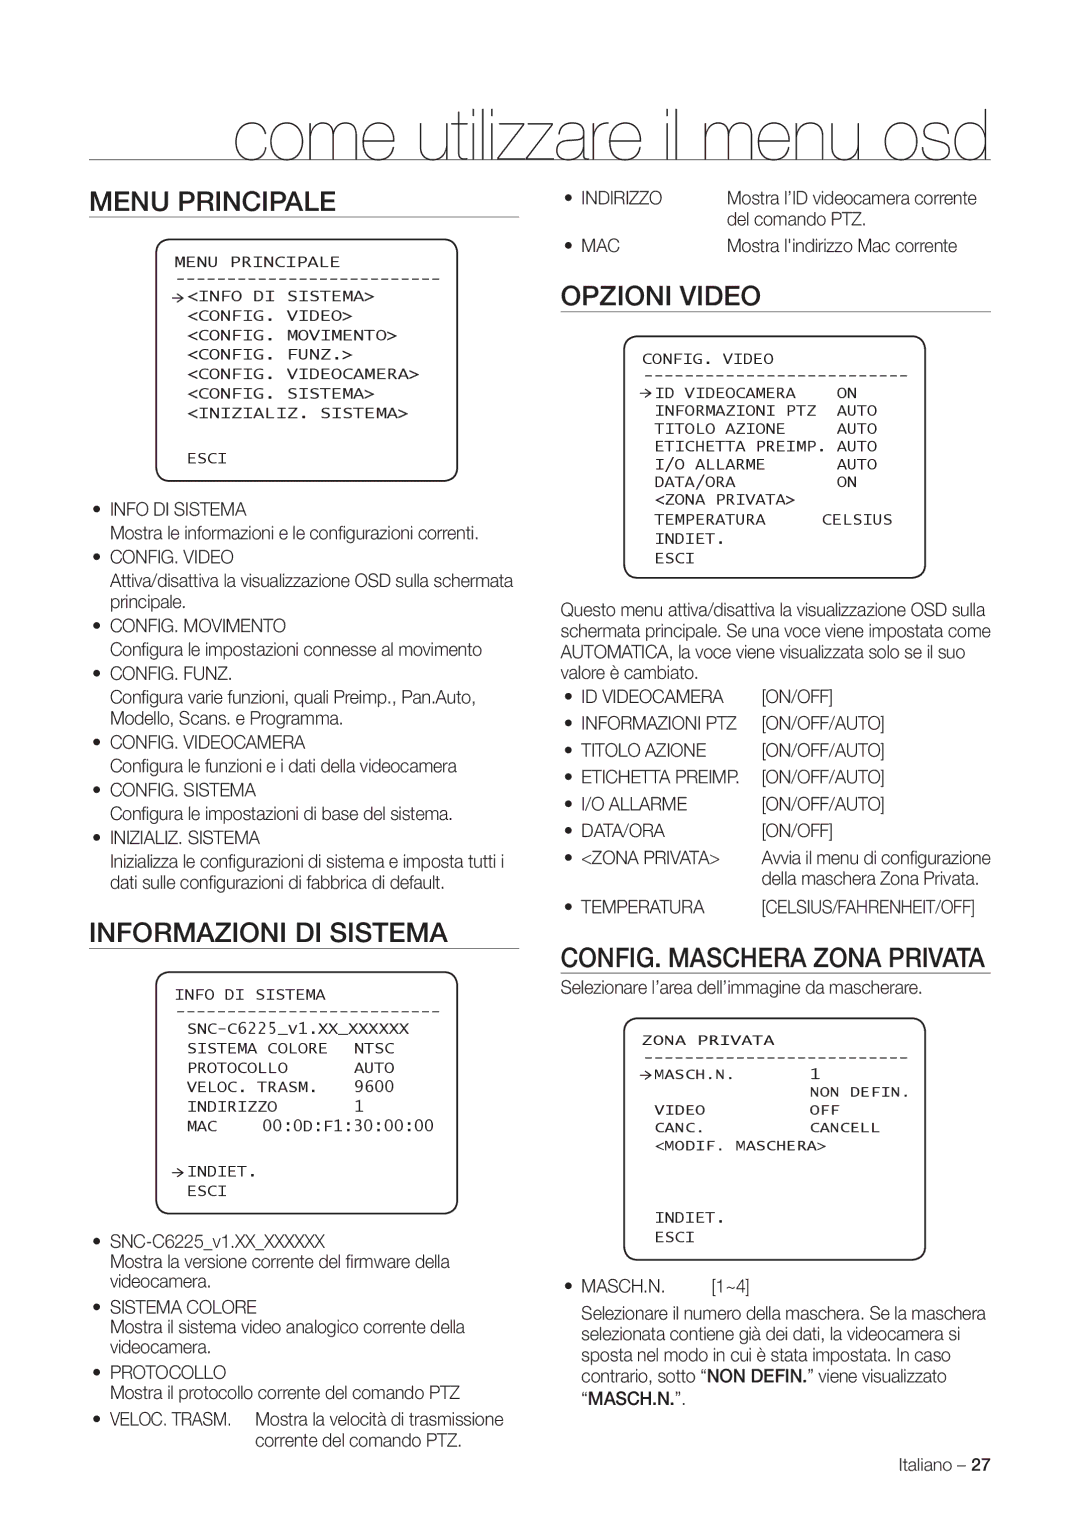 Samsung SNC-C7225P, SNC-C6225P manual Menu Principale, Informazioni DI Sistema, Opzioni Video, CONFIG. Maschera Zona Privata 